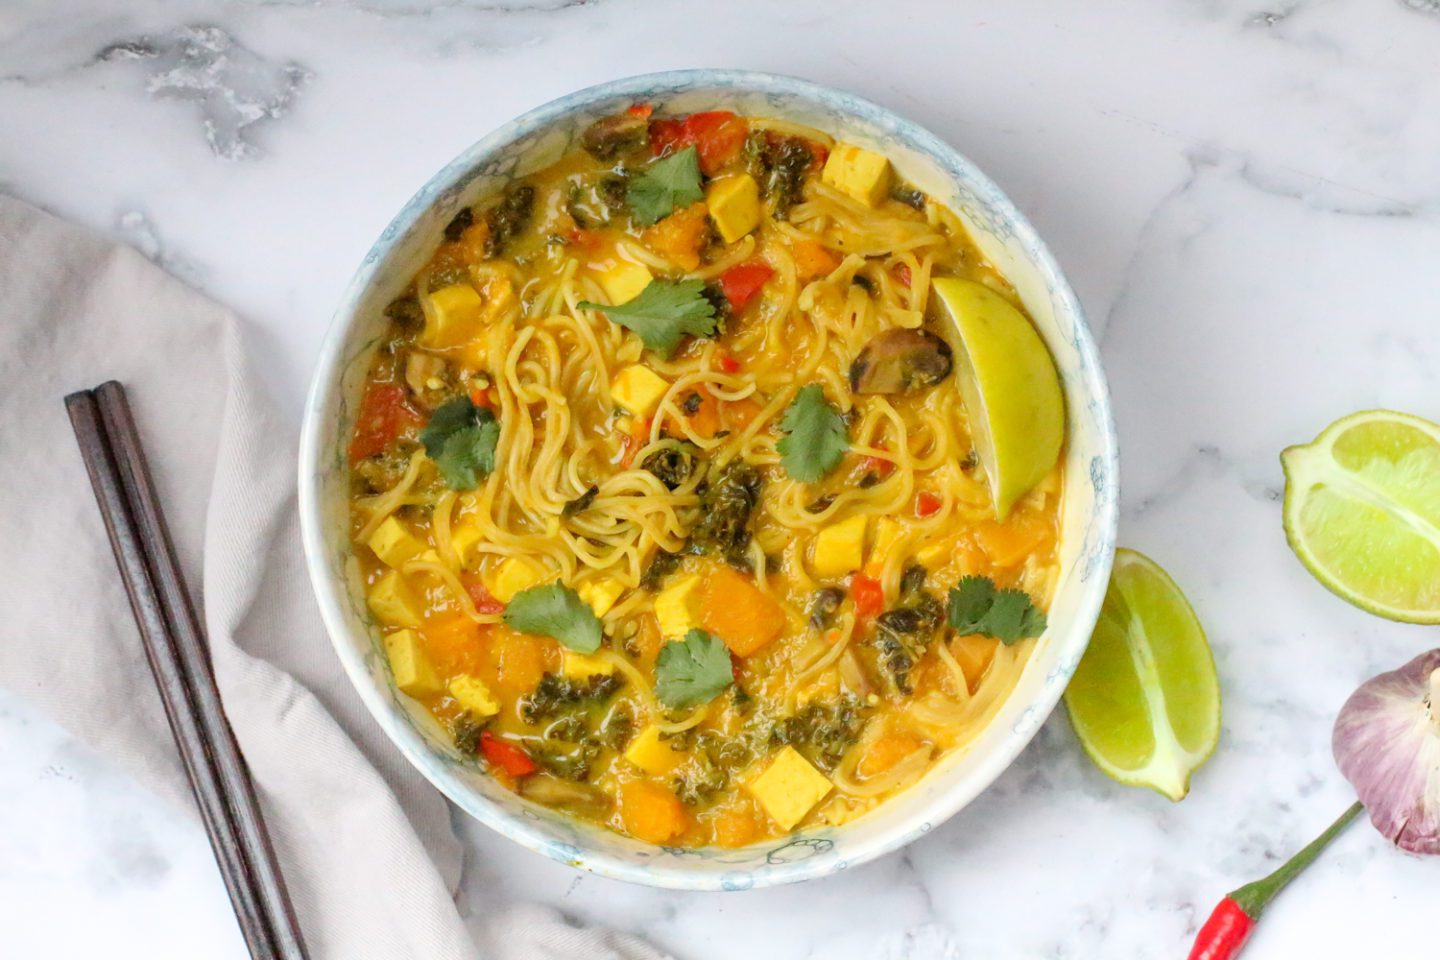 Warm and Nutritious Golden Ramen Soup with Tofu - Susan Cooks Vegan